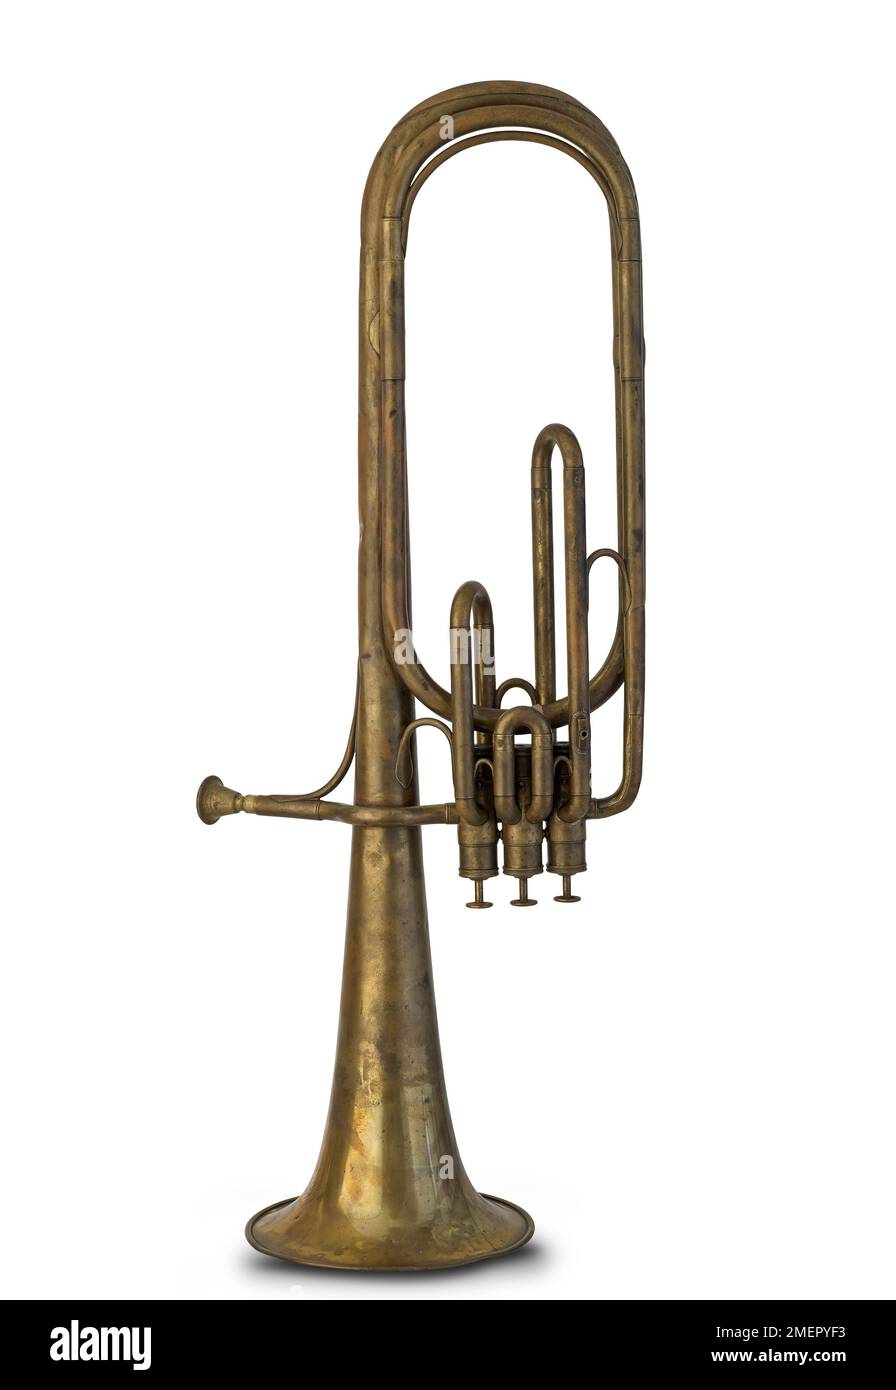 Saxhorn baryton en BB avec 3 Berlins (valves à piston de Berlin), fabriqué par Adolphe Sax, Paris, France, 1867 Banque D'Images